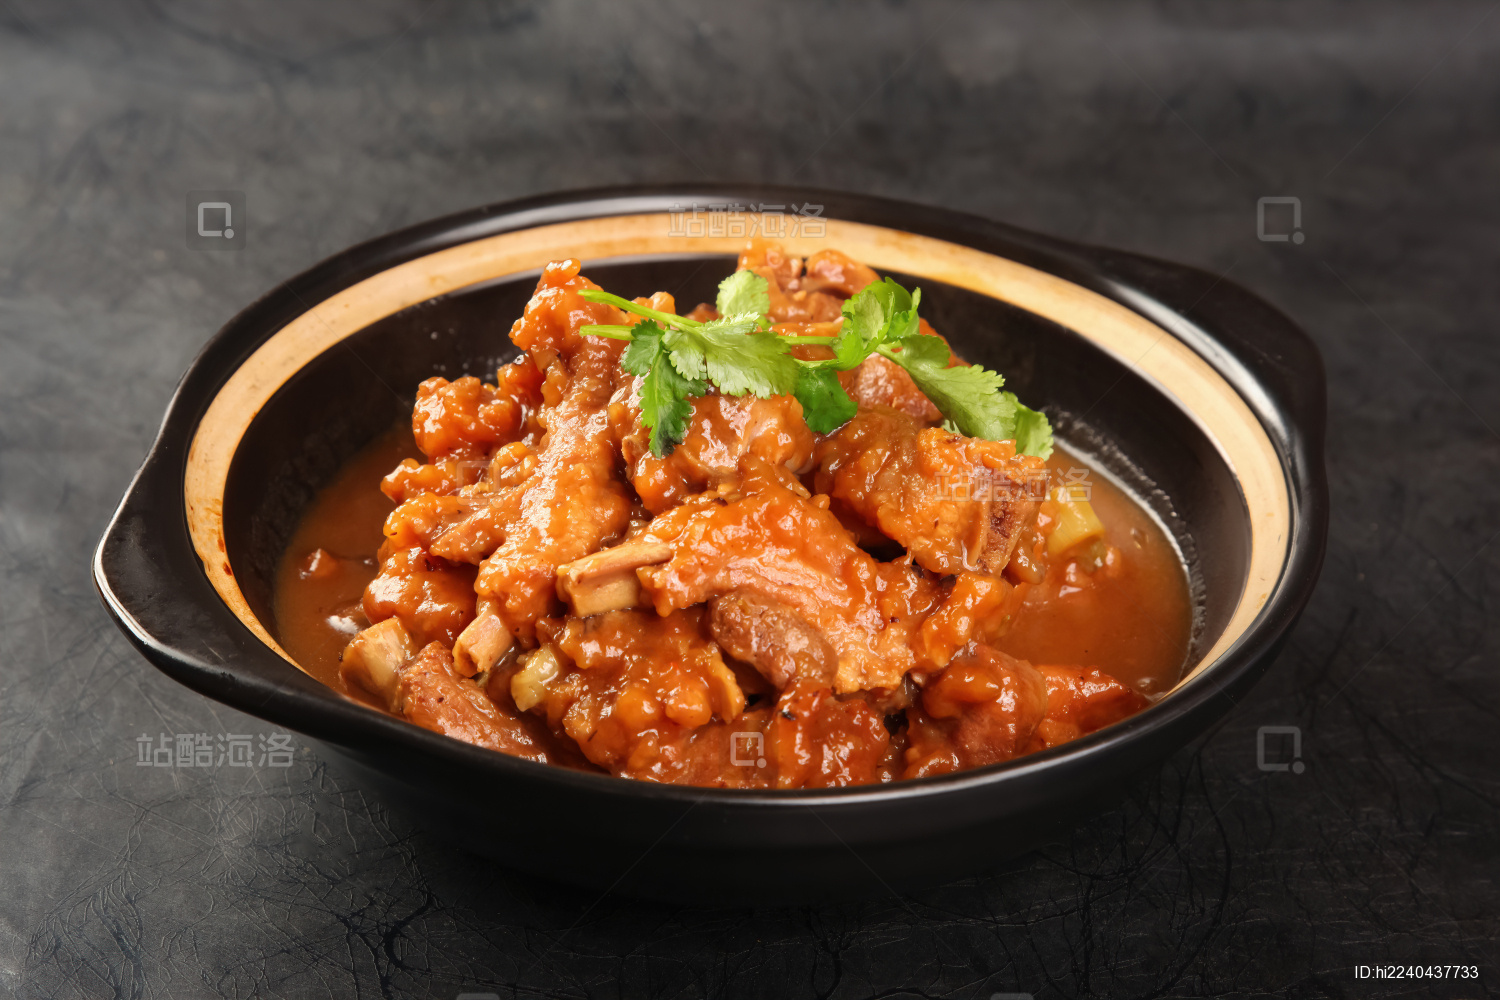 一道下饭好吃的砂锅肉末豆腐 用砂锅炖起来 易做又好吃暖和的美味 - 哔哩哔哩